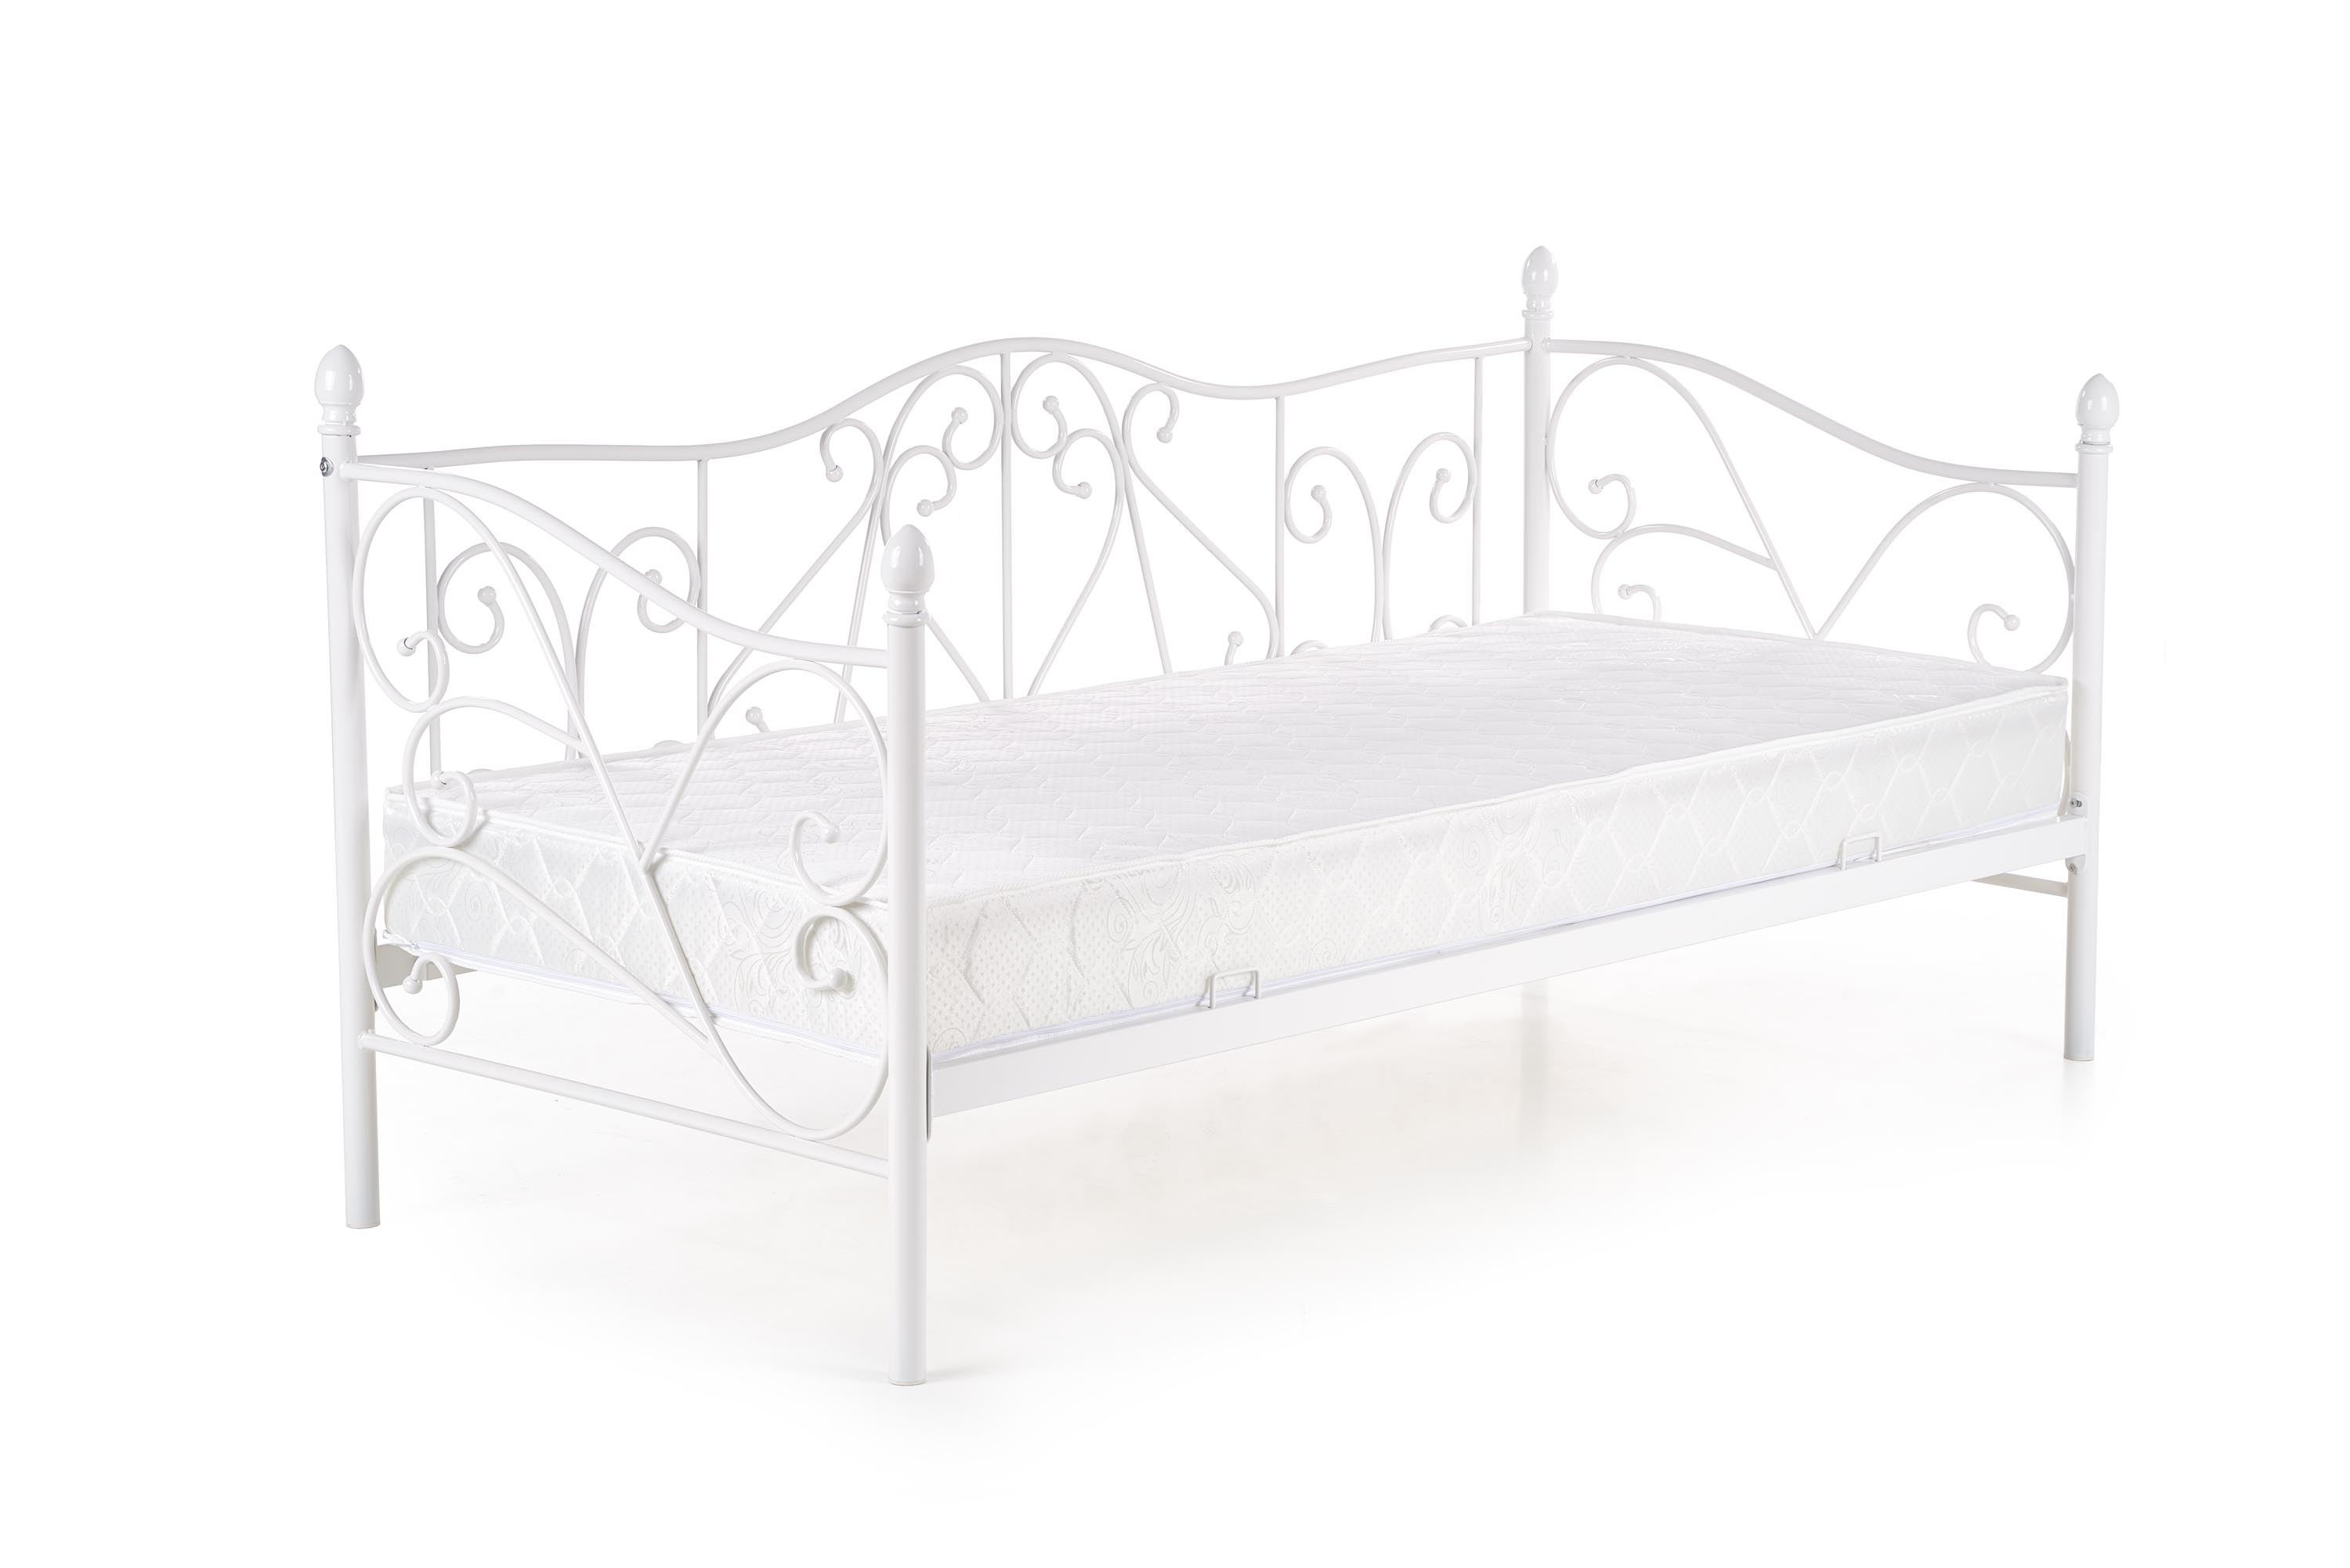 Łóżko do sypialni Sumatra 90x200 białe łóżko jednoosobowe